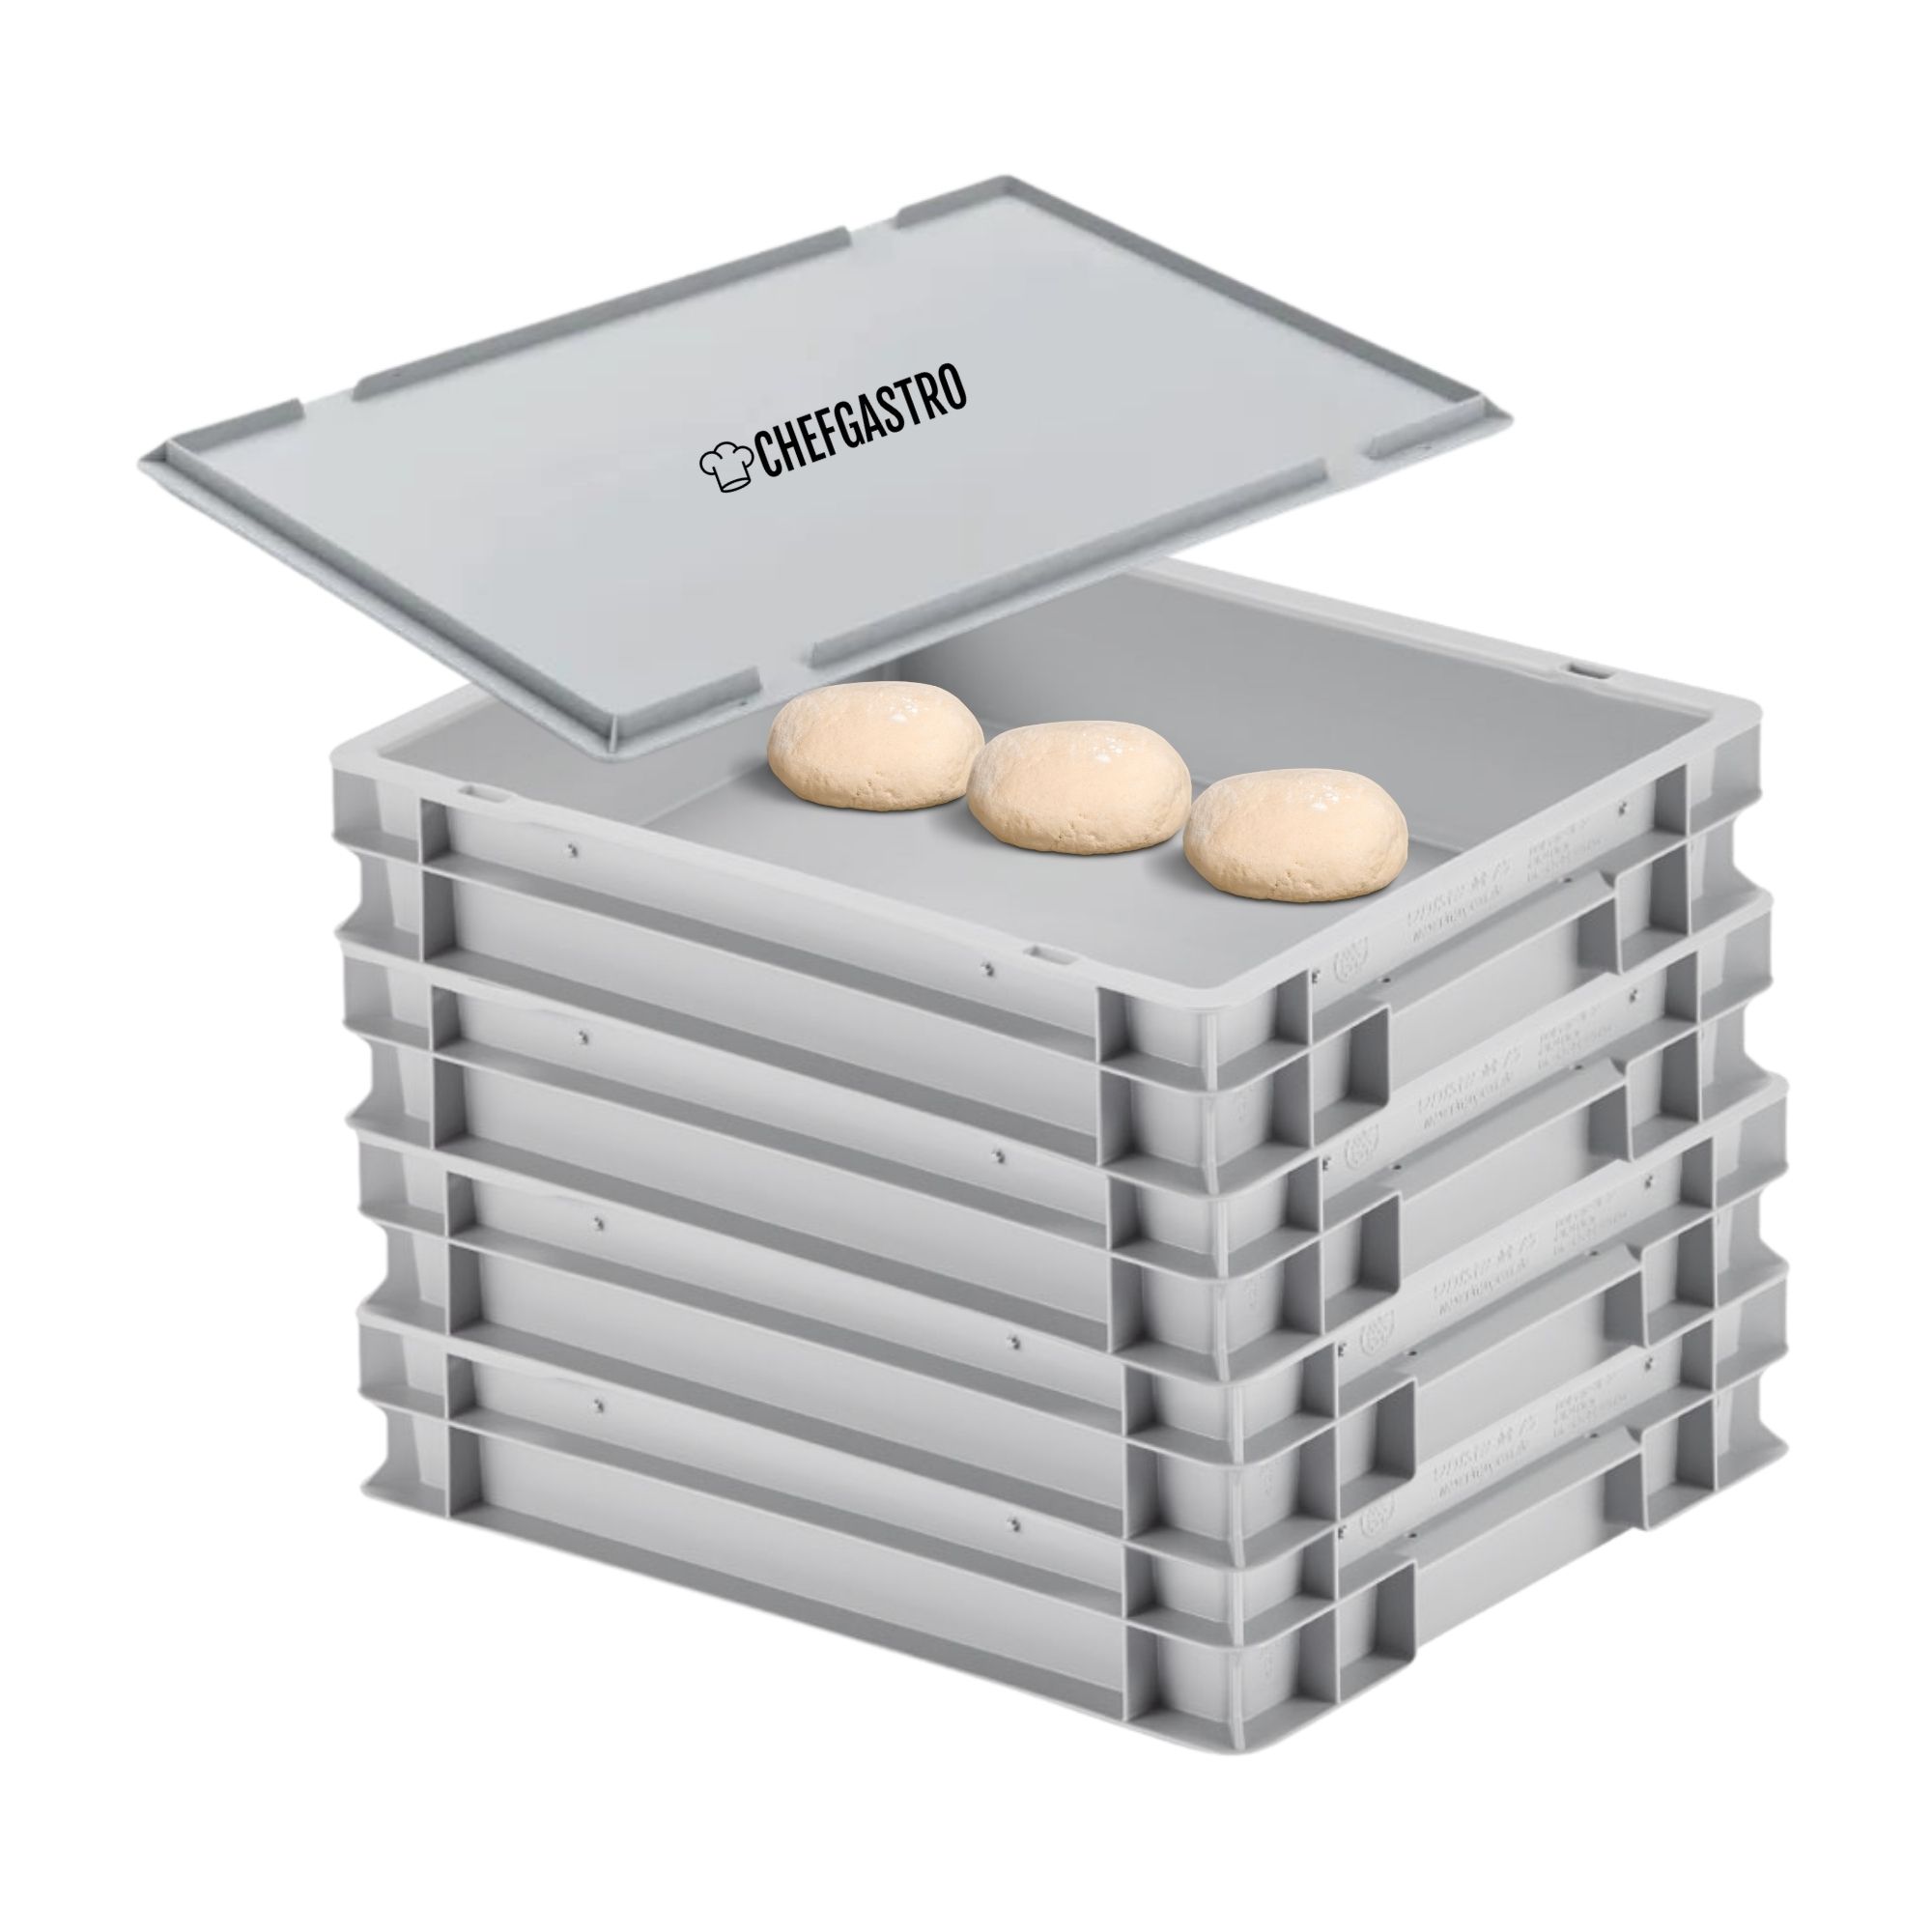 CHEFGASTRO SuperSparSet 4x Pizzaballenbox mit 1x Deckel | HxBxT 8,5x30x40cm | 9 Liter | Teigwanne für Pizzateig, Stapelbare Pizzabox, Gärbox für Sauerteig Brotteig Teig-Gärbox